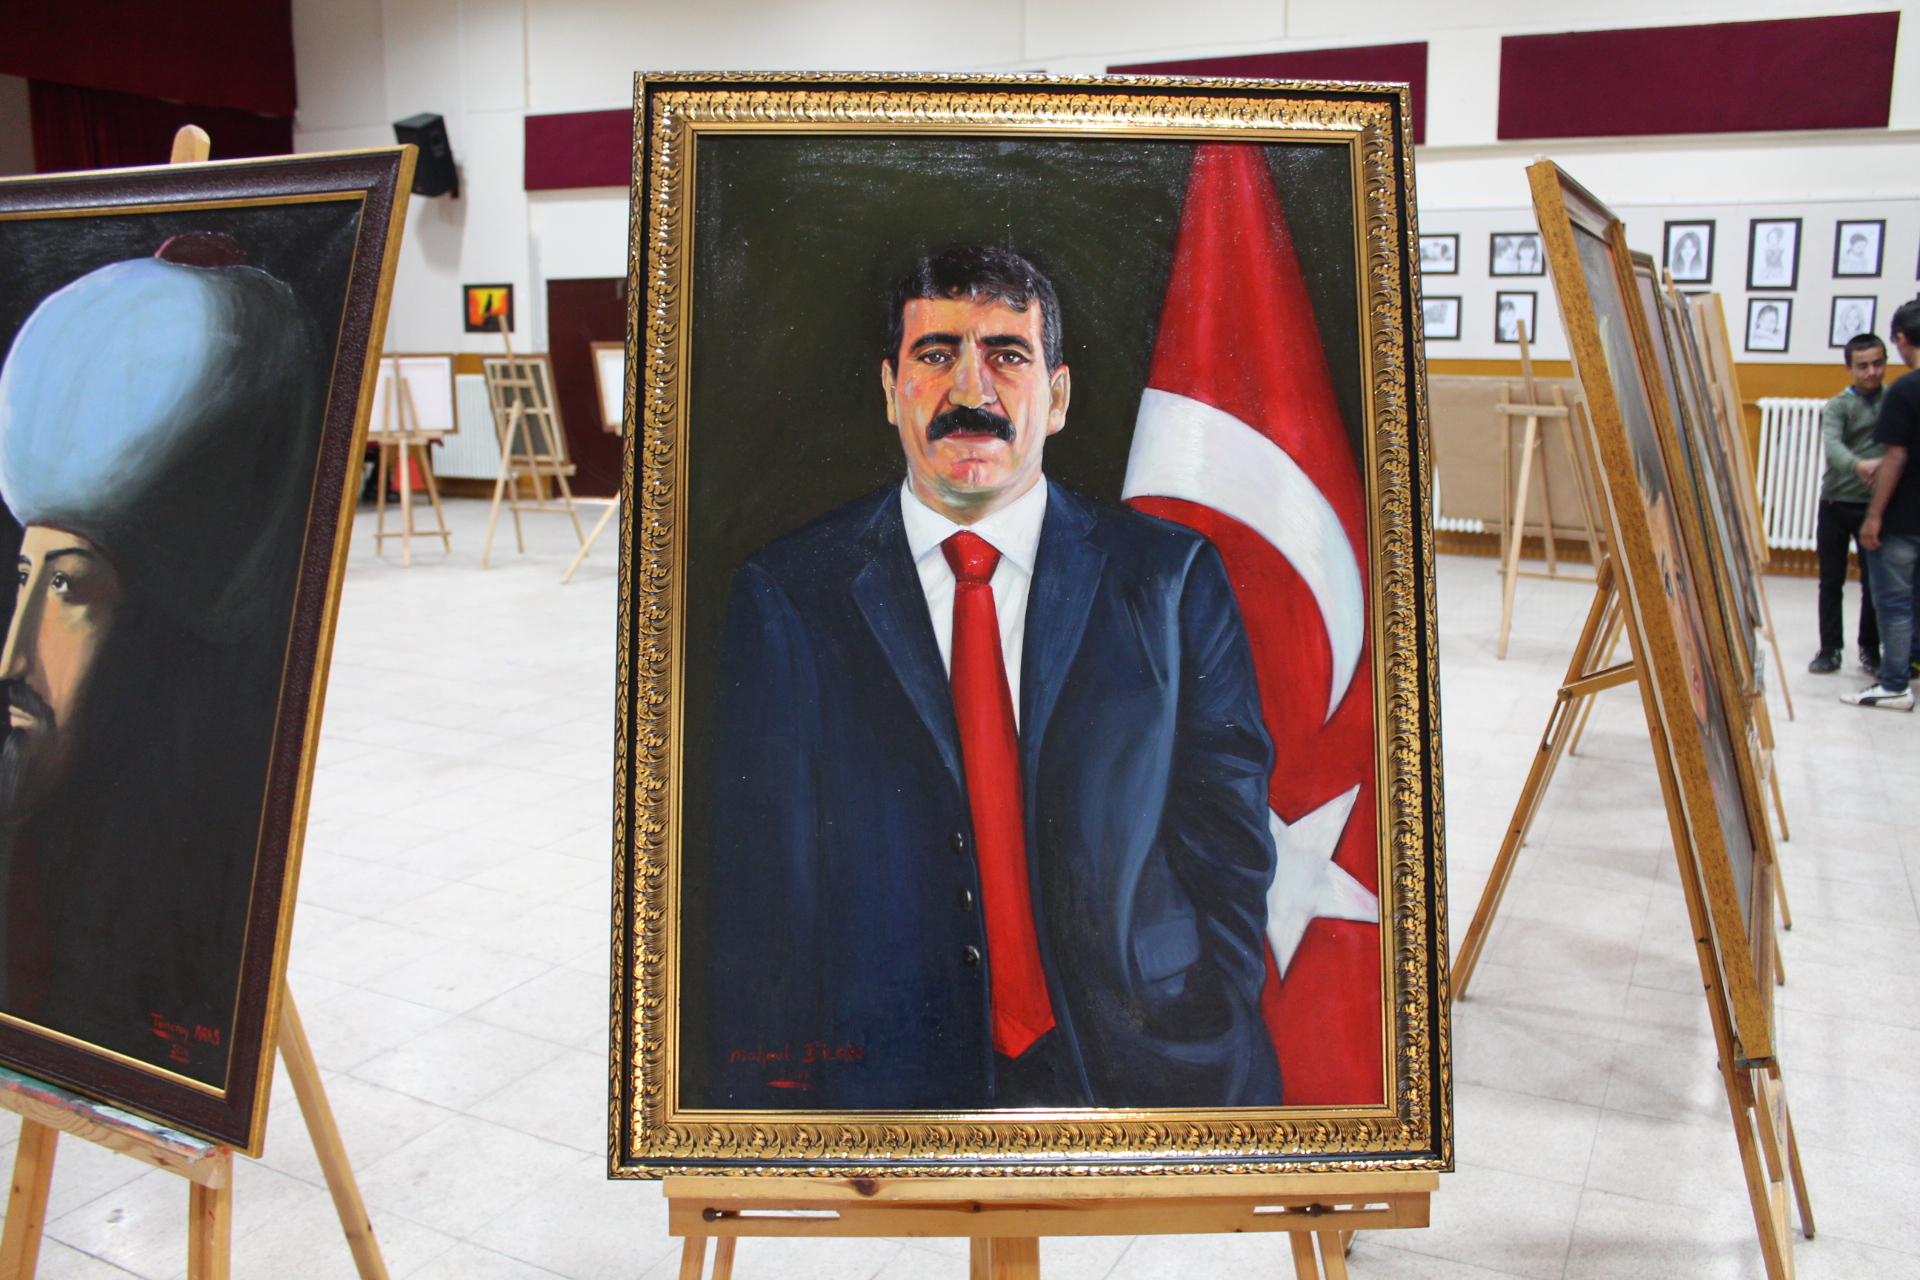 Bitlis İl Milli Eğitim Müdürü Mehmet Emin Korkmaz ve Güroymak Milli Eğitim Şube Müdürü Serdar Ergün Güroymak Yatılı Bölge Ortaokulu'nda açılan resim sergisini ziyaret etti.
